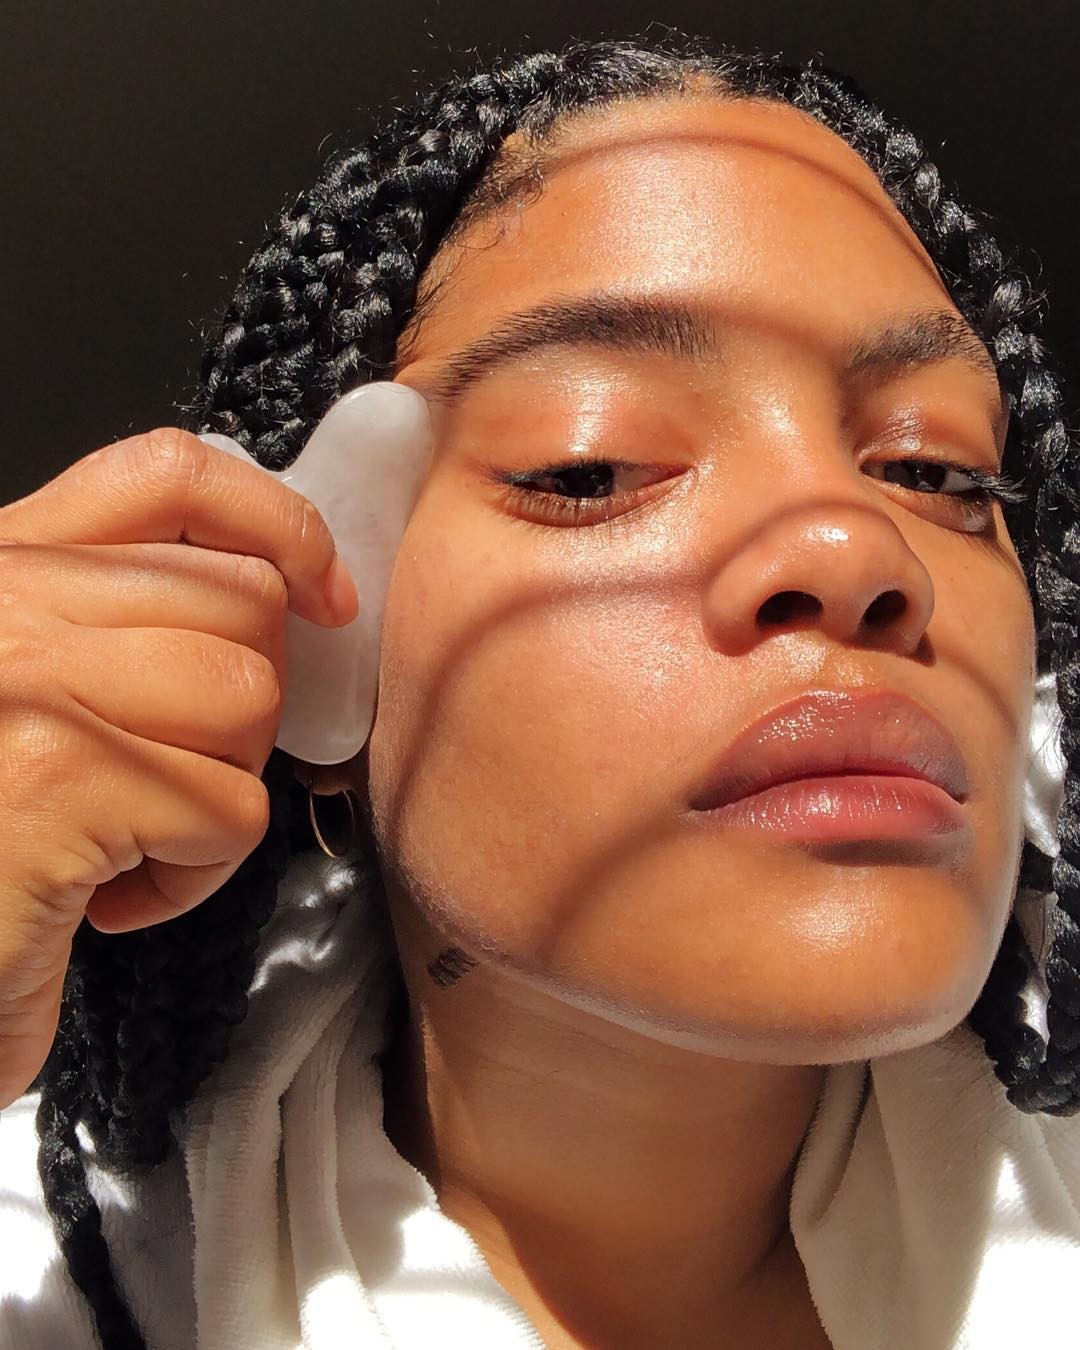 Chloe Vero fazendo massagem facial no rosto  (Foto: Reprodução Instagram @chloevero)